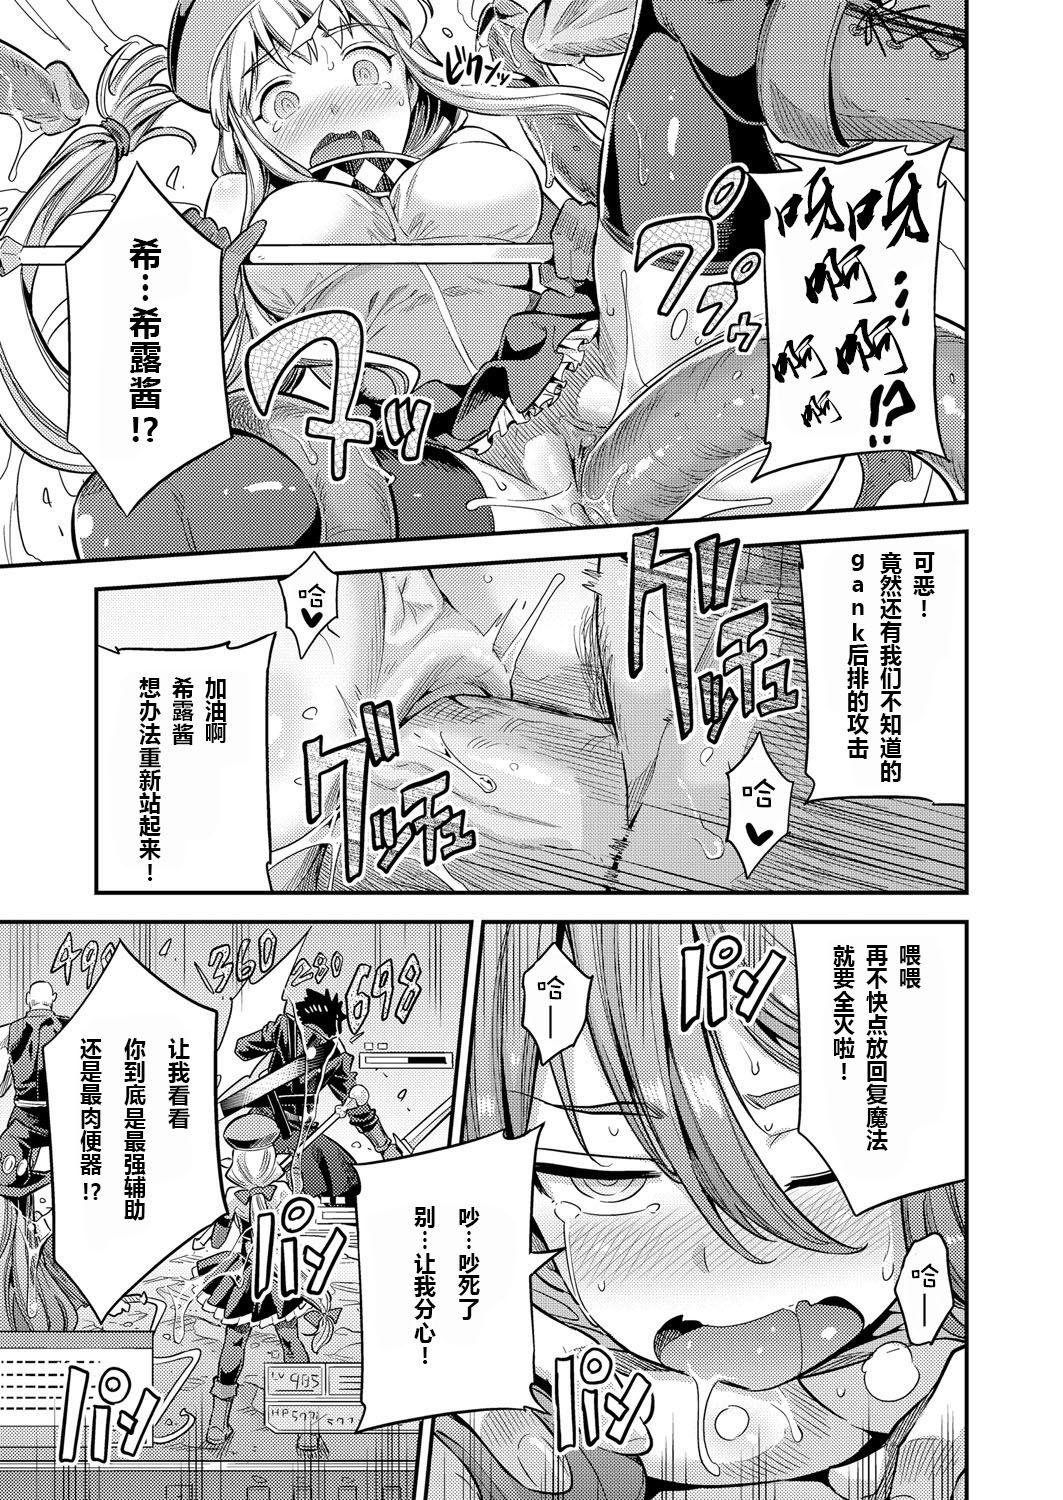 Bottom Watashi ga Ittara Mina Shinjau Netoge Haijin wa Tanetsuke Rape saretemo Te ga Hanasenain desu Webcamchat - Page 11